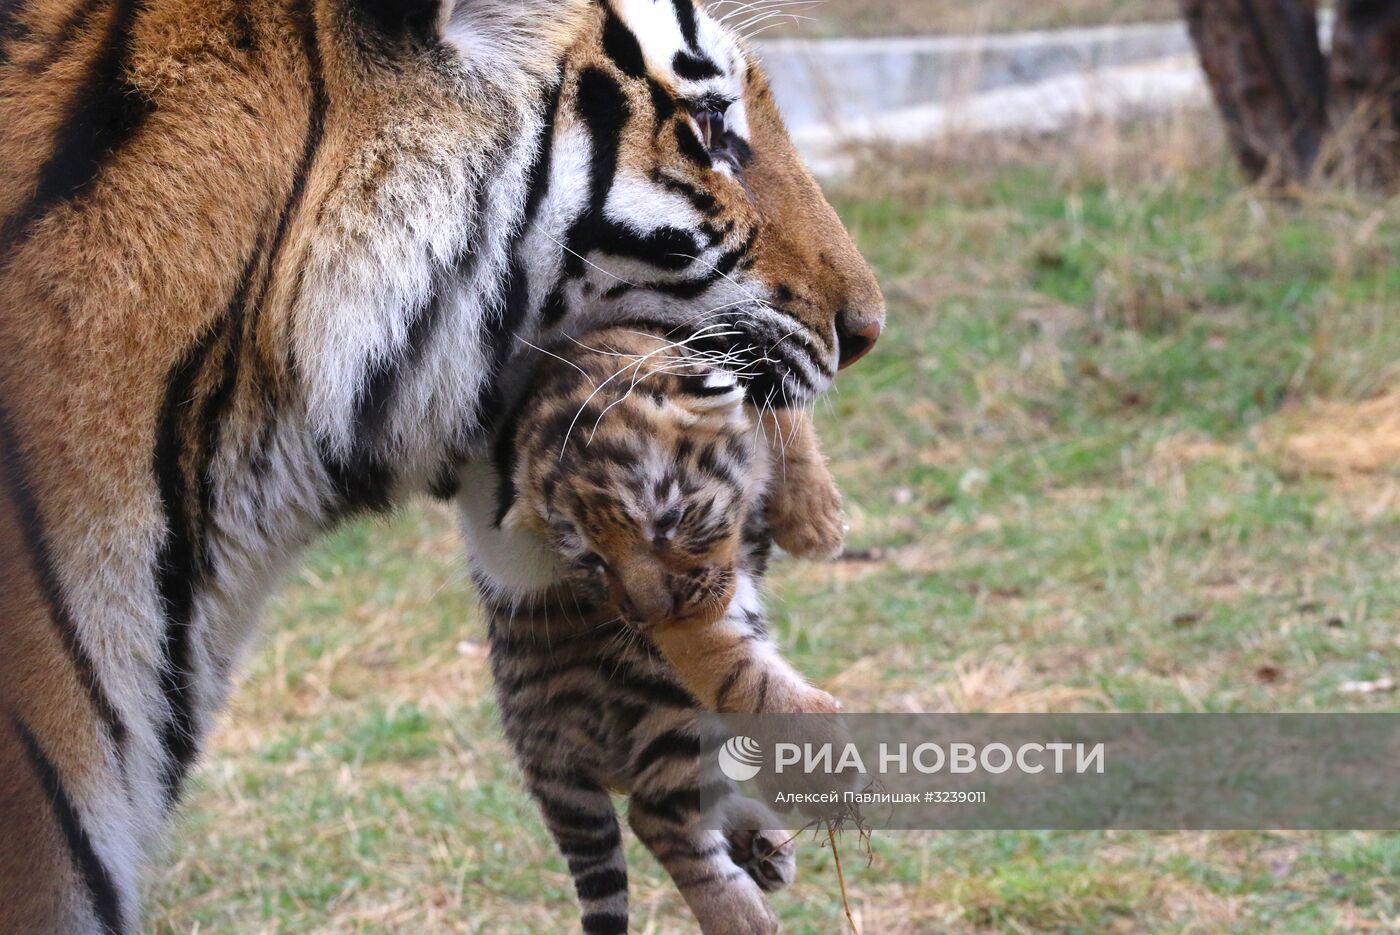 Шесть амурских тигрят родились в крымском сафари-парке "Тайган"